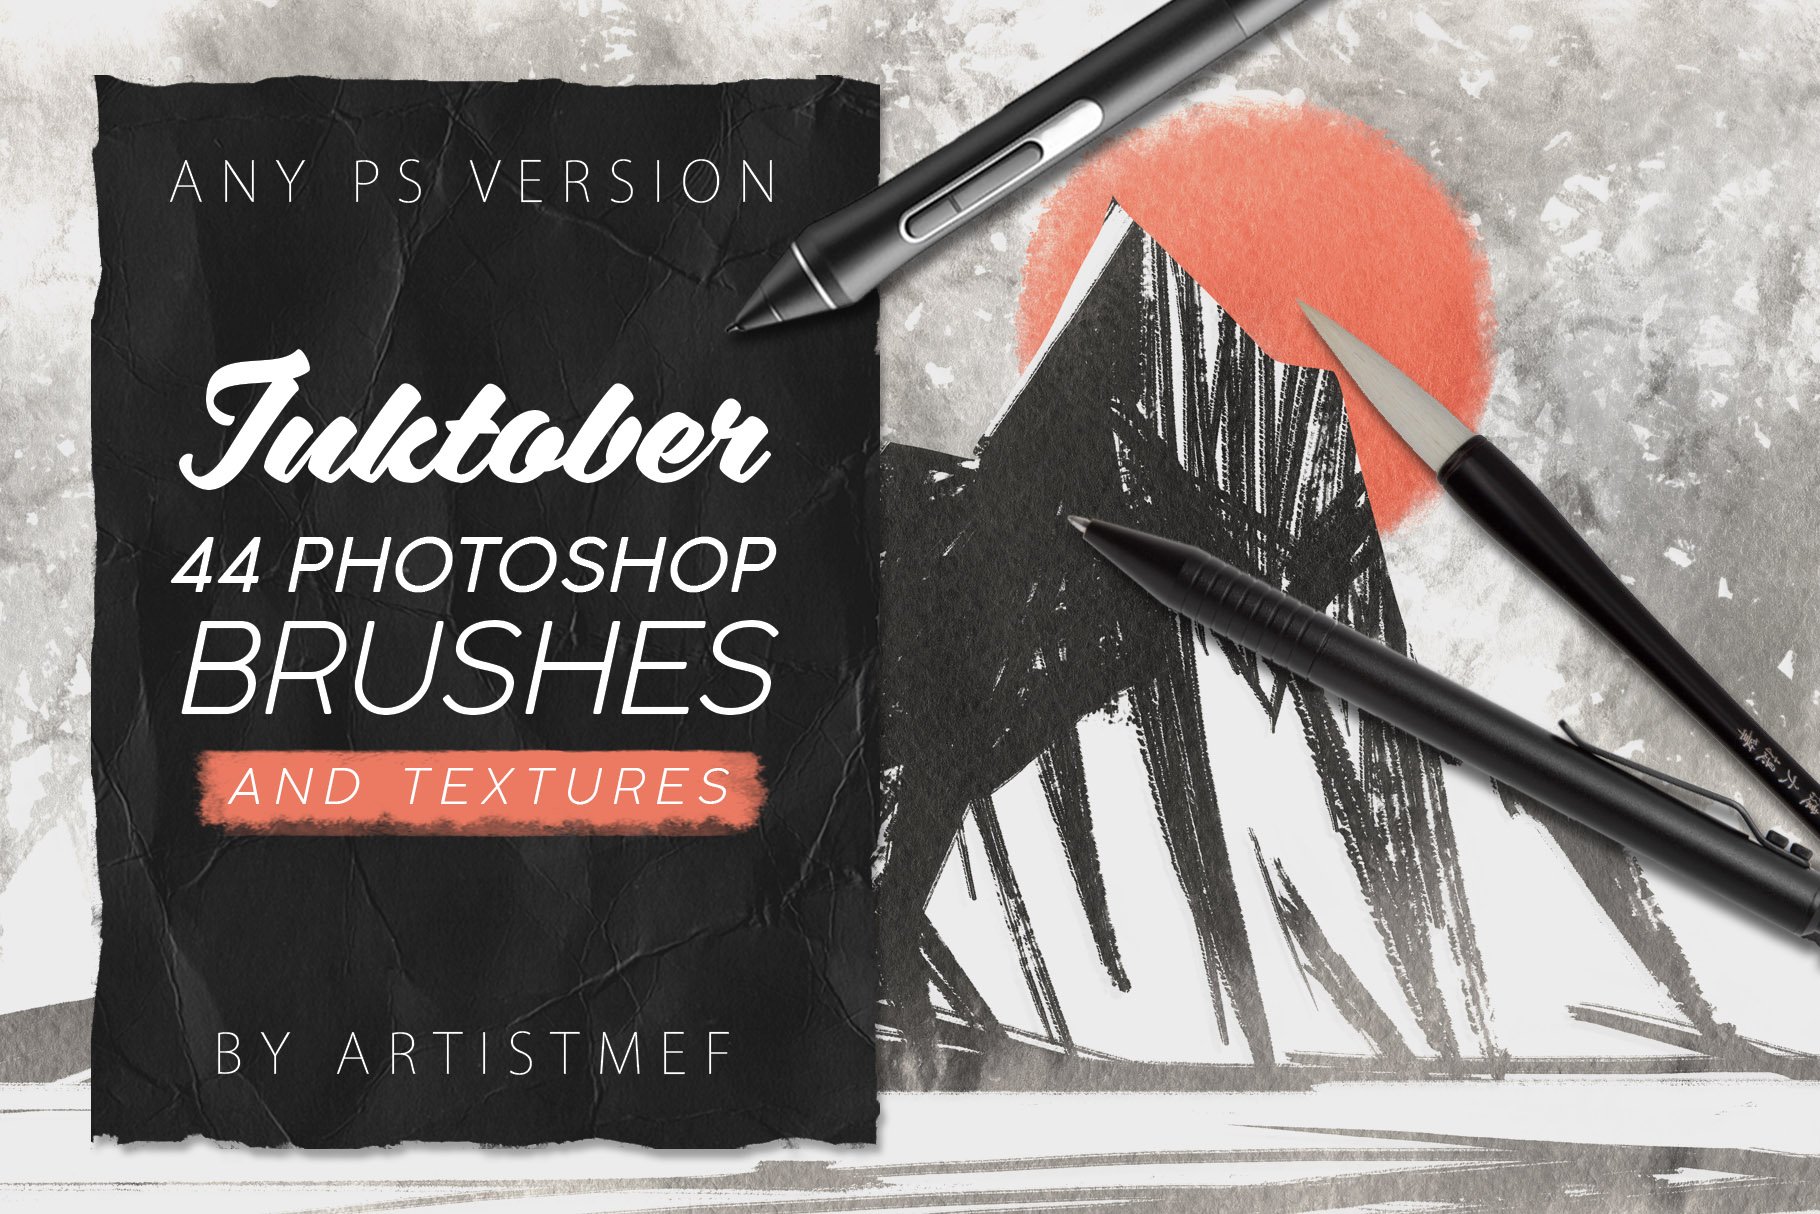 Inktober Procreate&Photoshop Brushescover image.